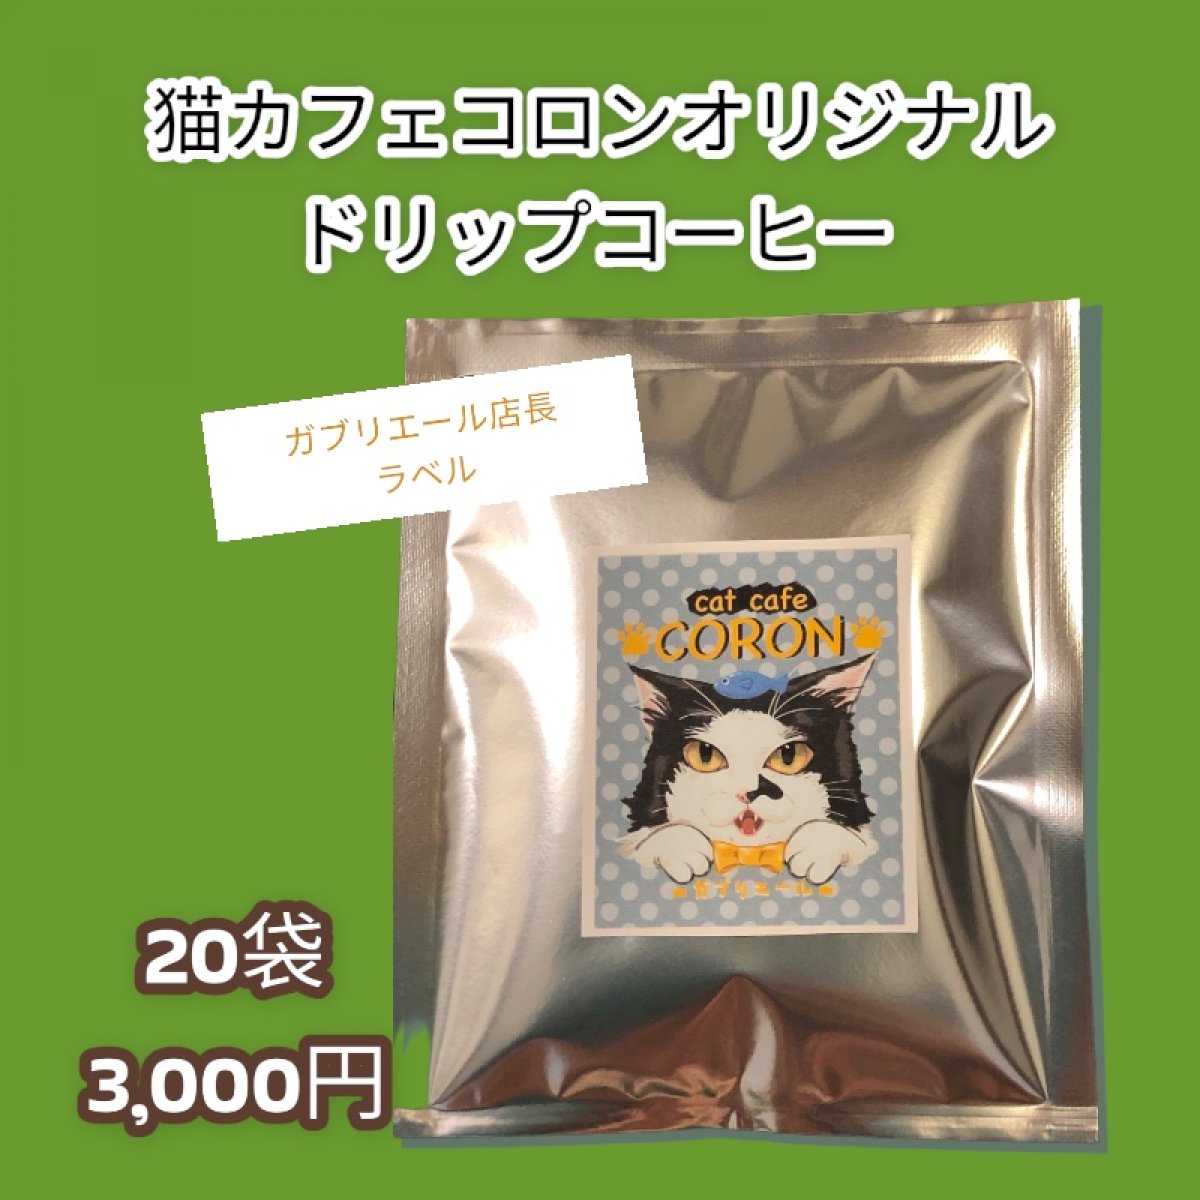 【猫カフェコロンの保護猫応援ドリップパックコーヒー20袋】美味しい応援◆定期購入あり◆挽きたてをパックしてお届けです